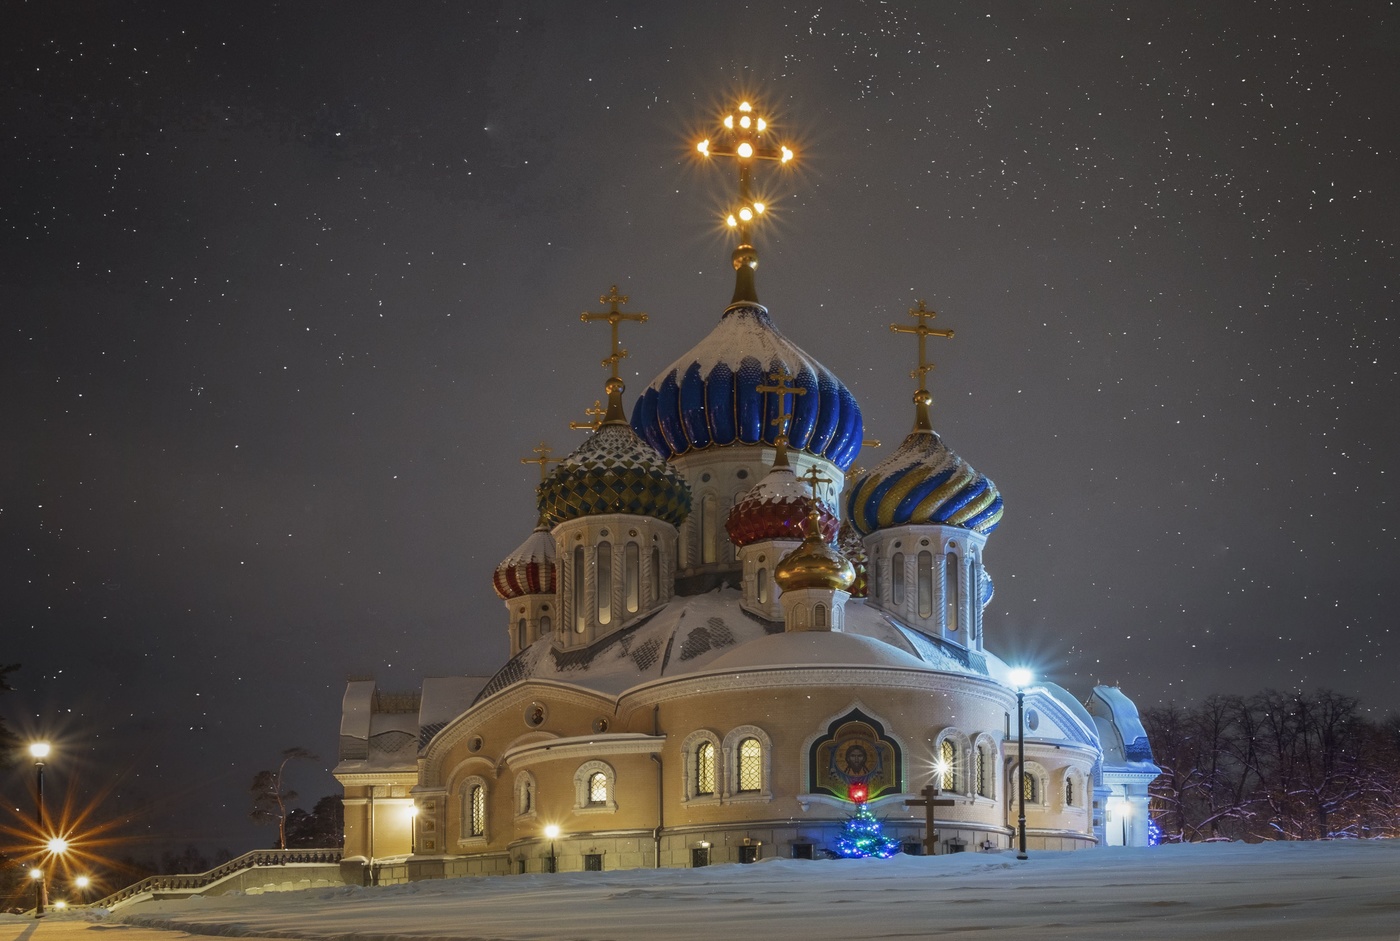 Храм Святого Игоря Черниговского, Переделкино, Москва